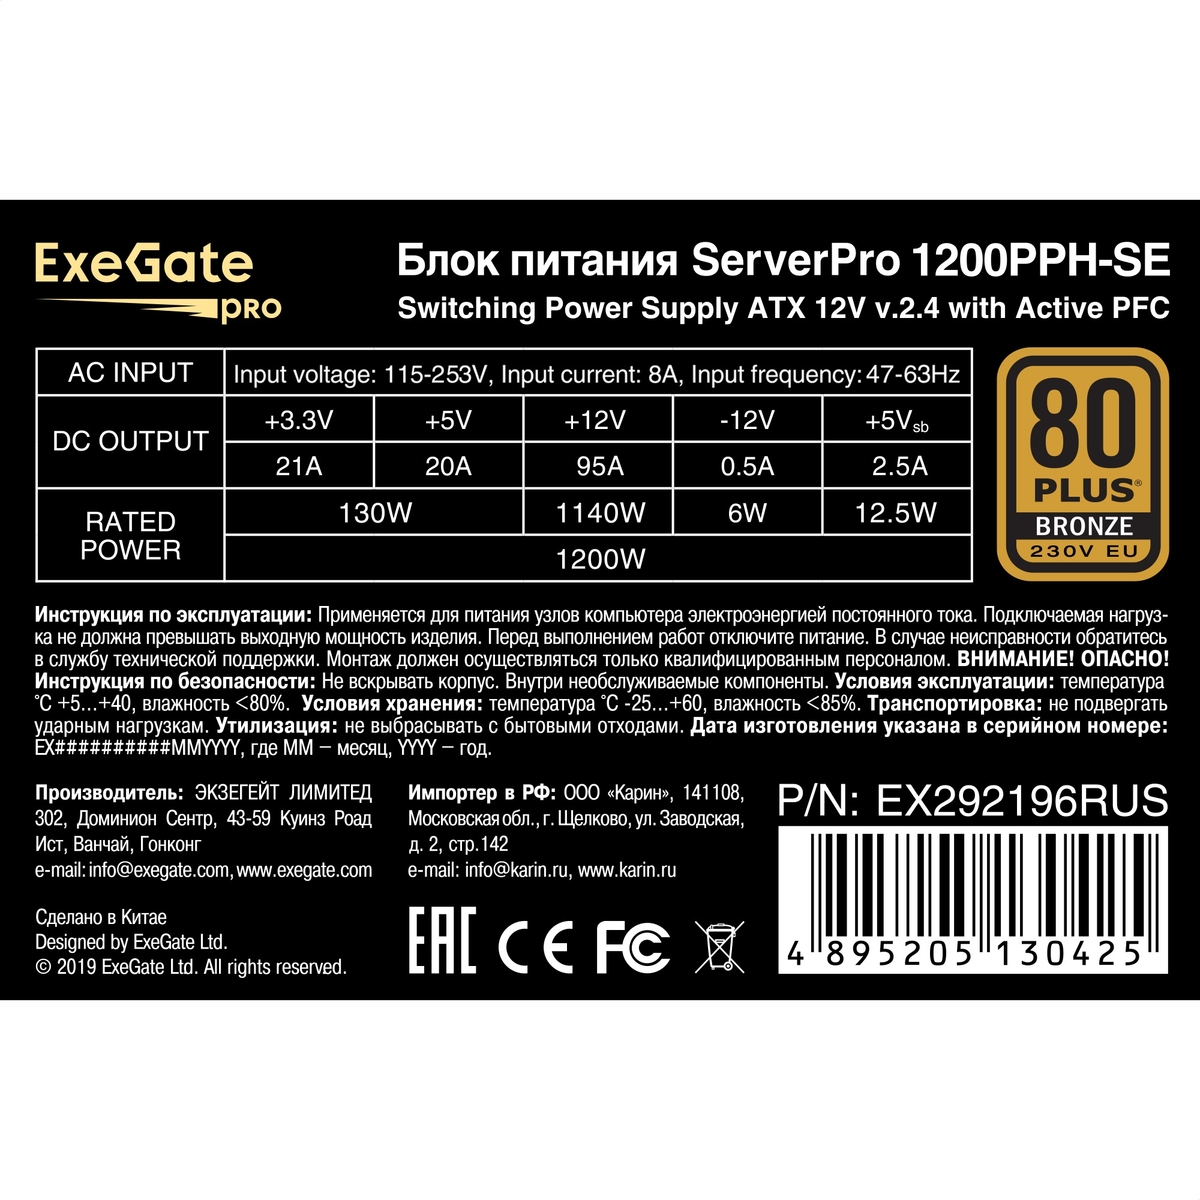   1200W ExeGate ServerPRO 80 PLUS<sup></sup> Bronze 1200PPH-SE